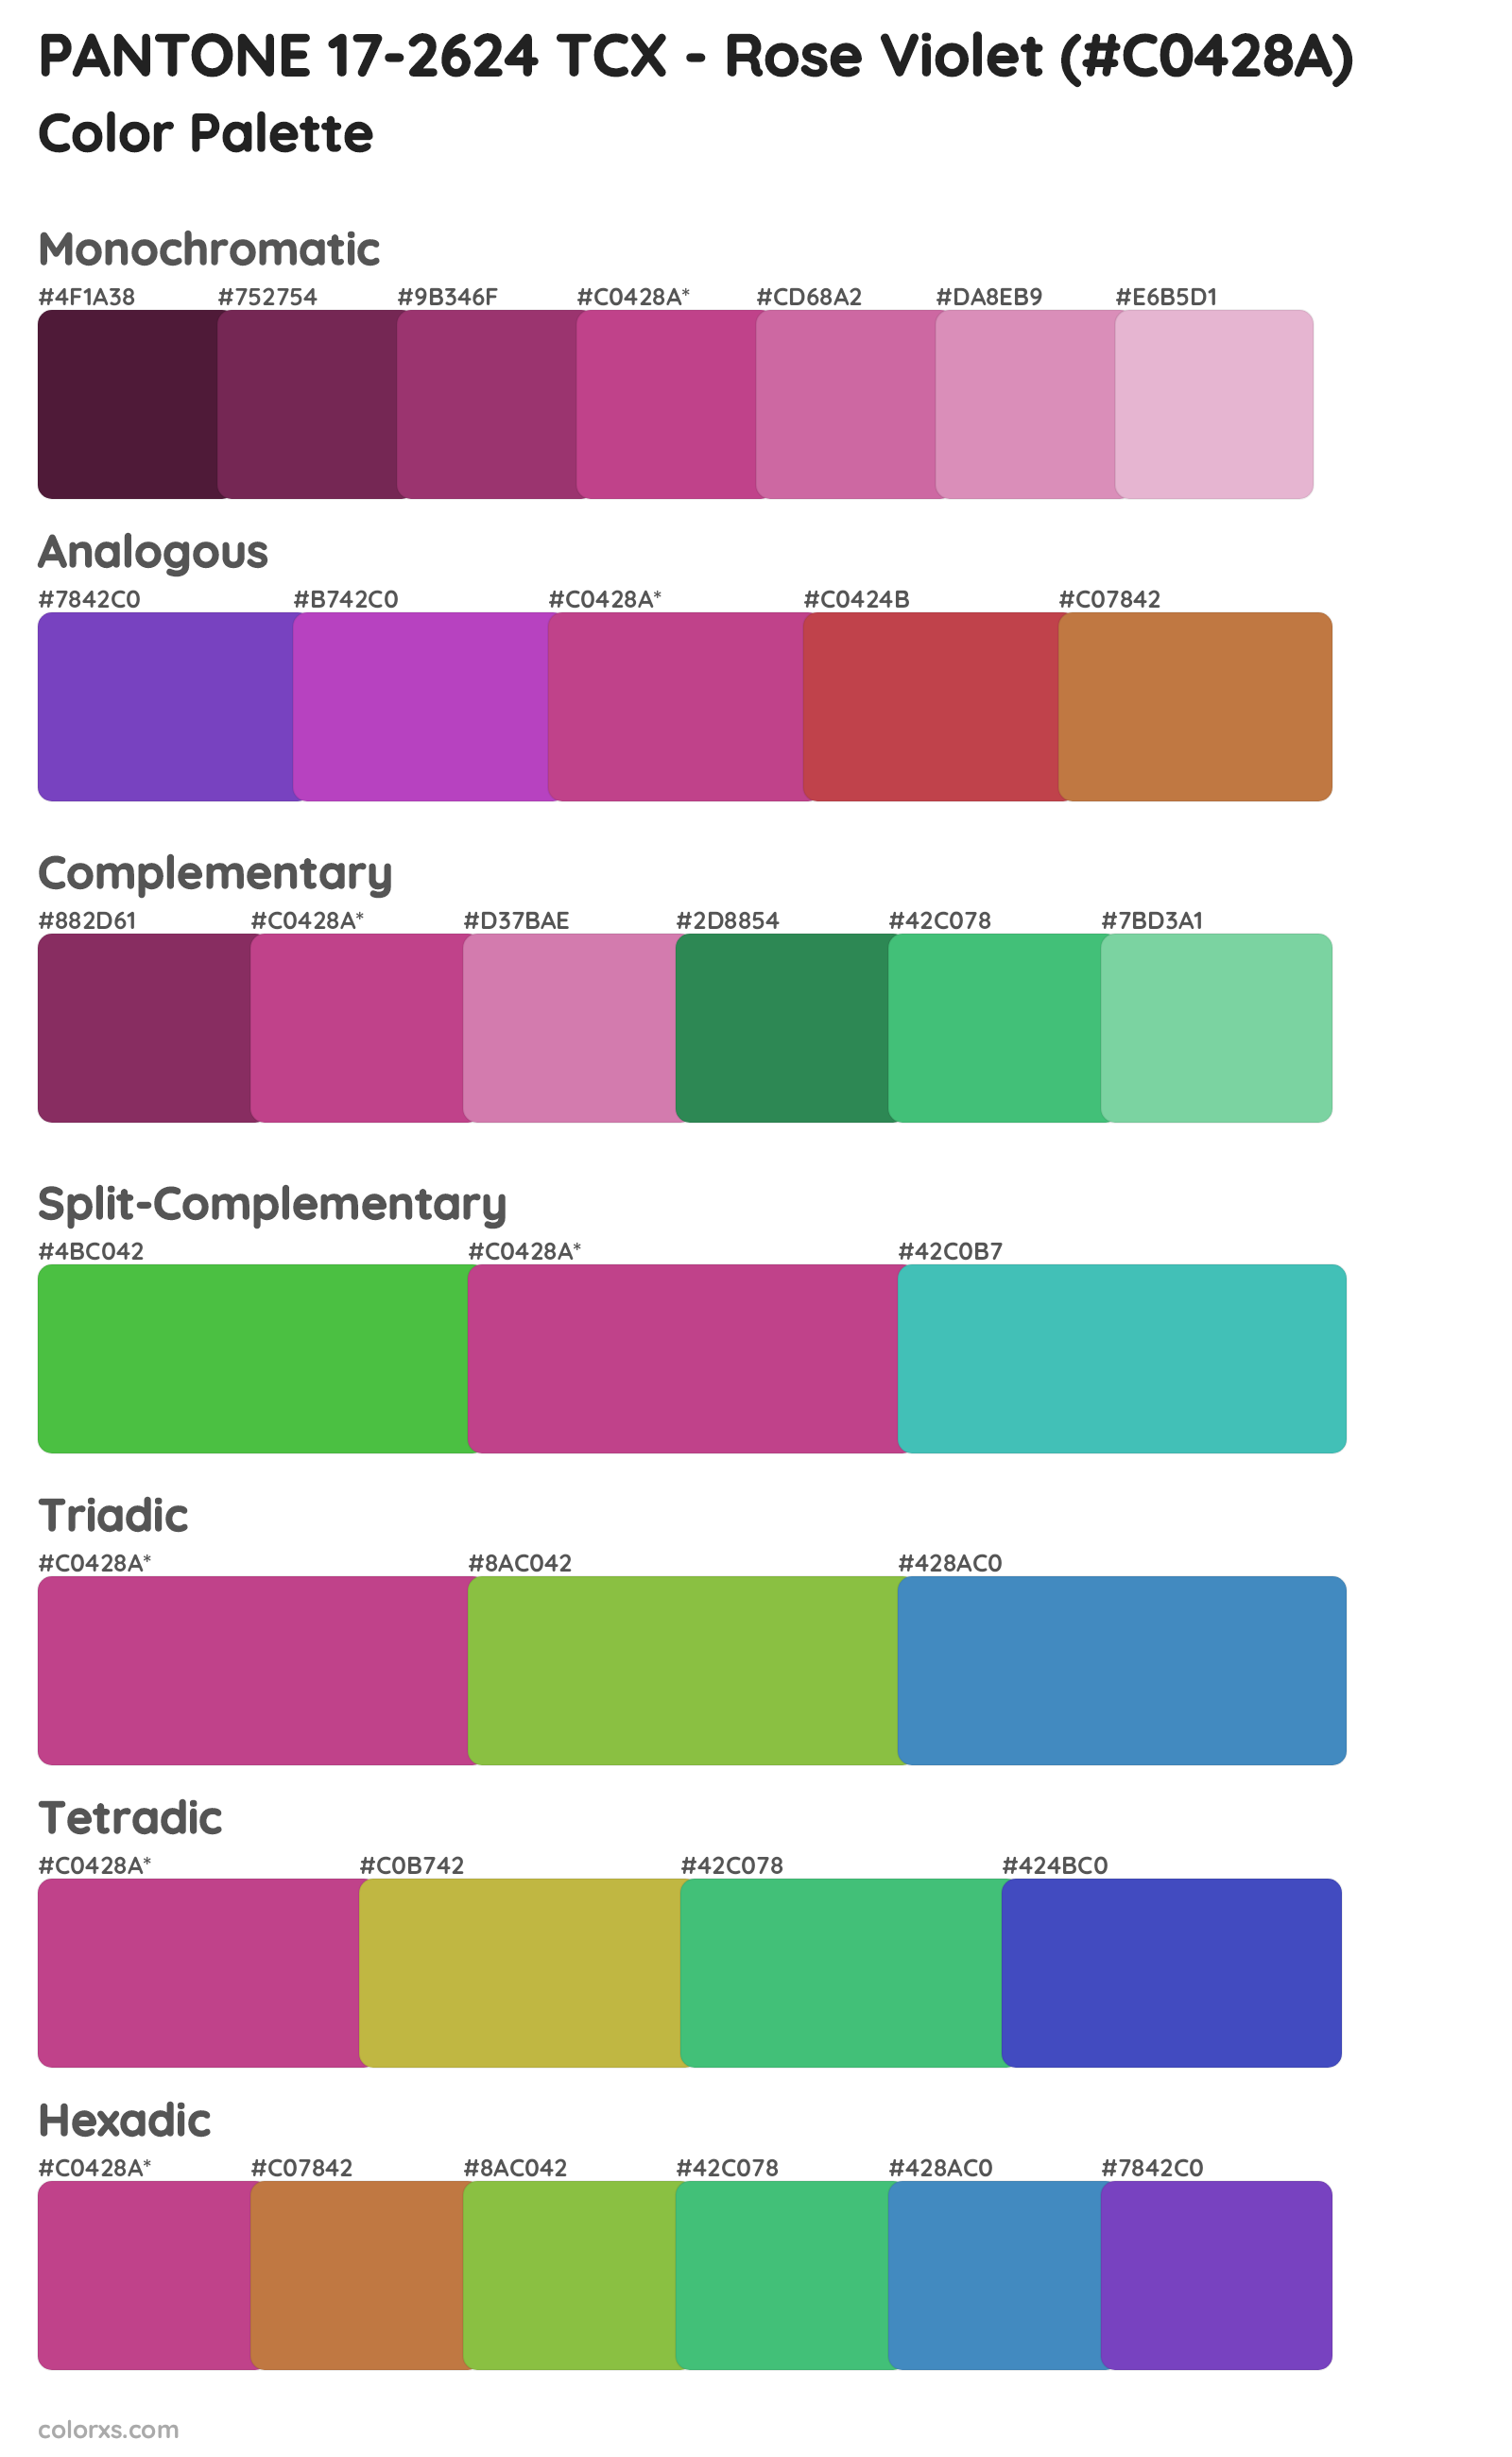 PANTONE 17-2624 TCX - Rose Violet Color Scheme Palettes